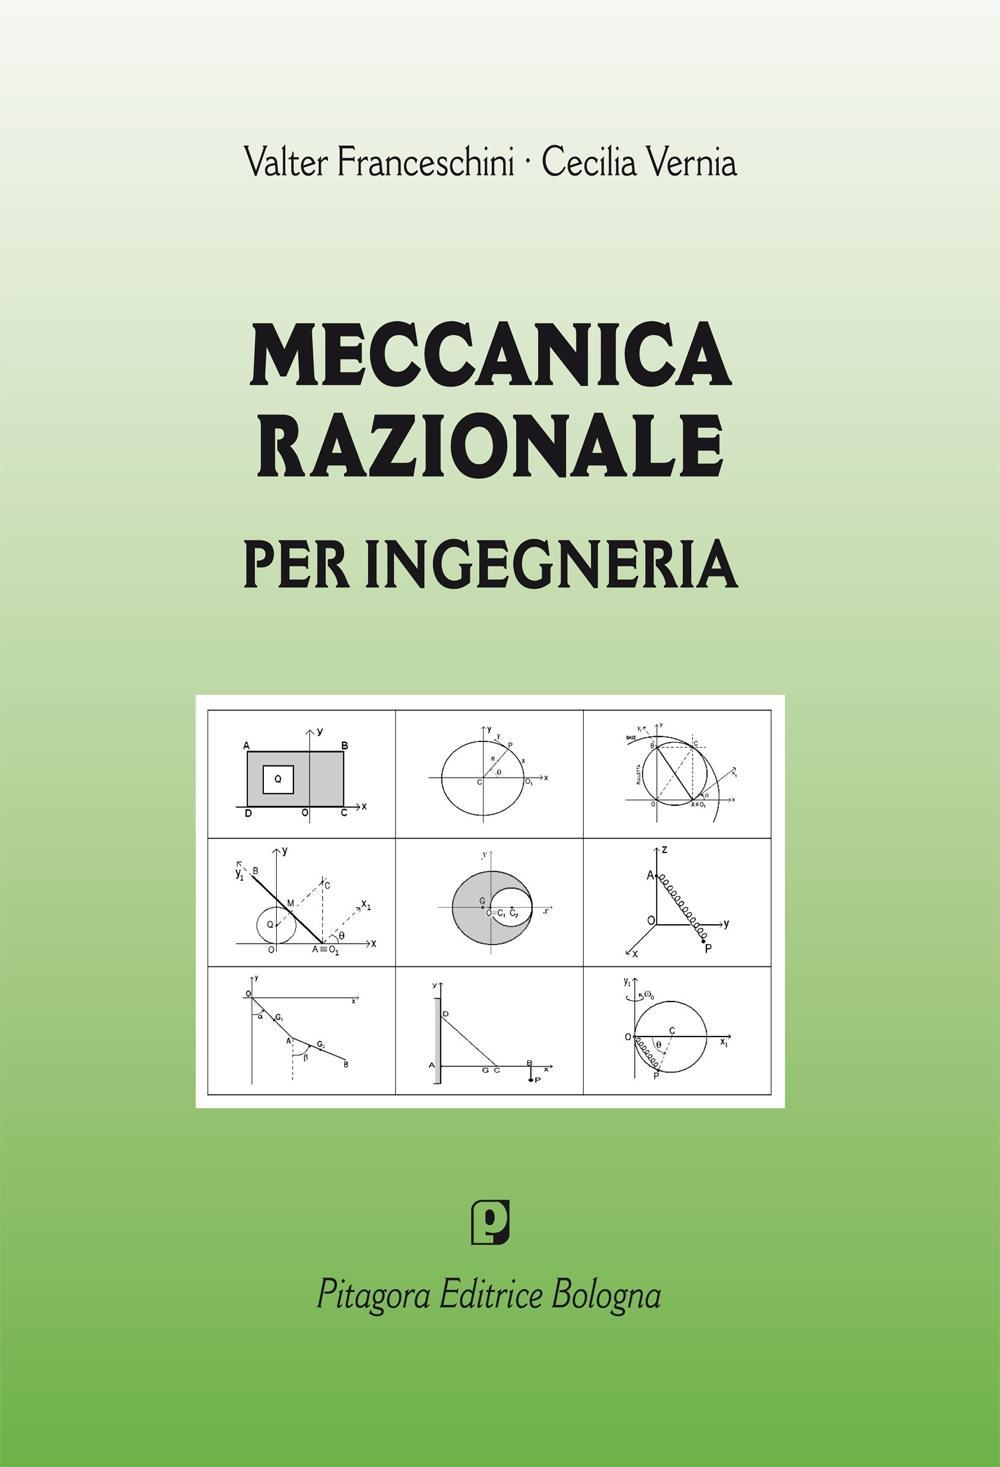 Image of Meccanica razionale per ingegneria